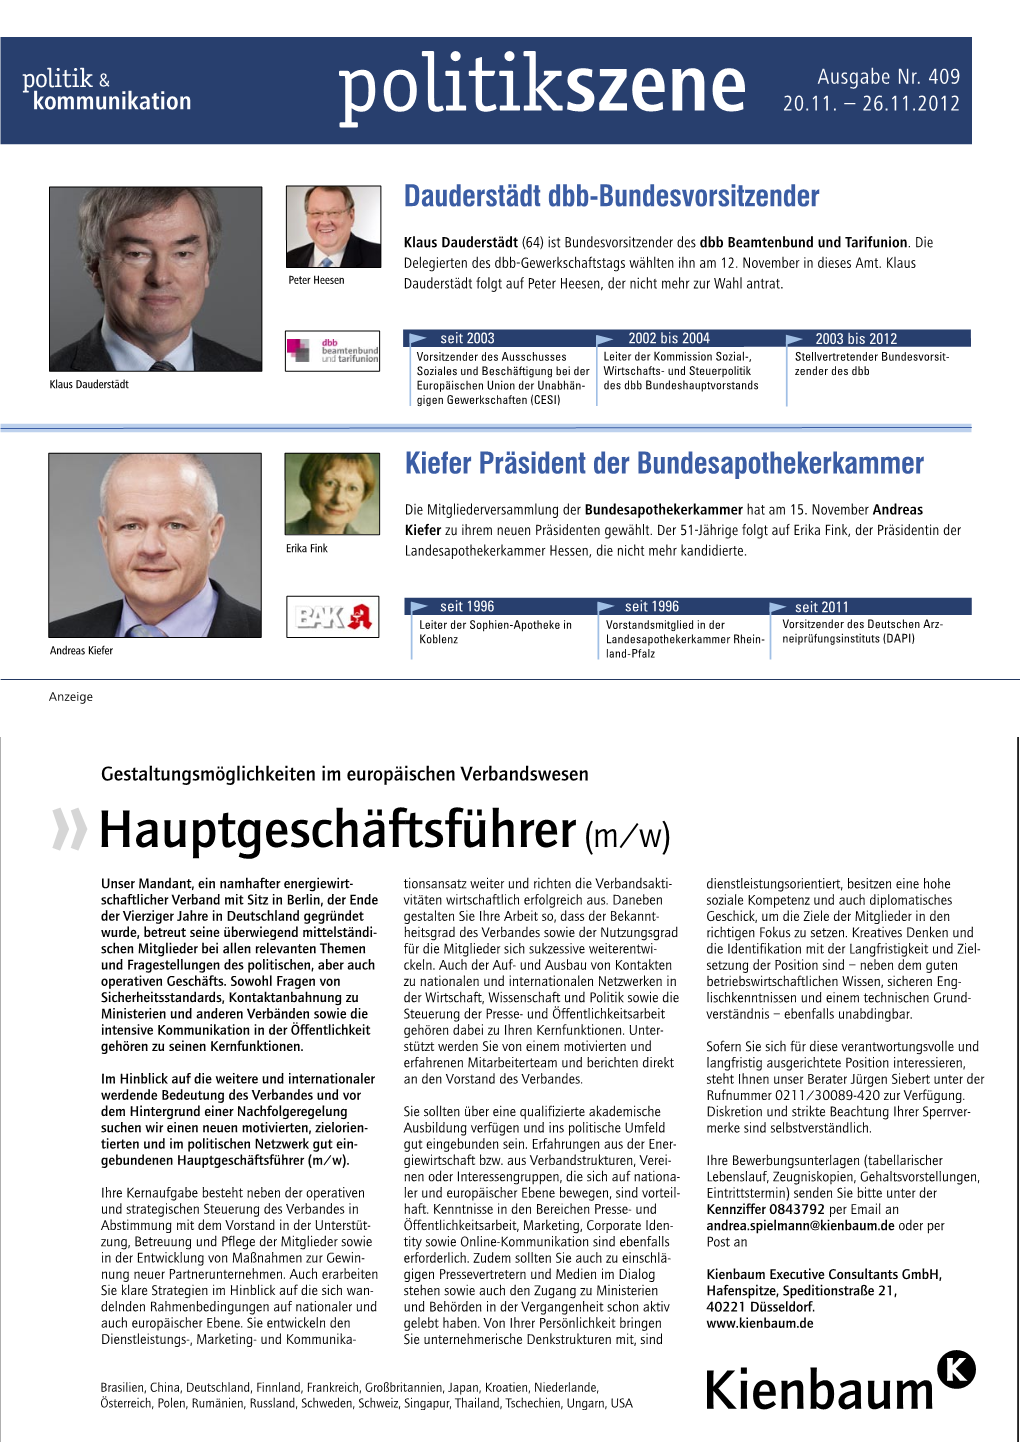 Der SPD-Kanzlerkandidat Peer Steinbrück (65, SPD) Ist Kanzlerkandidat Der Sozialdemokraten Für Die Bundestagswahl 2013